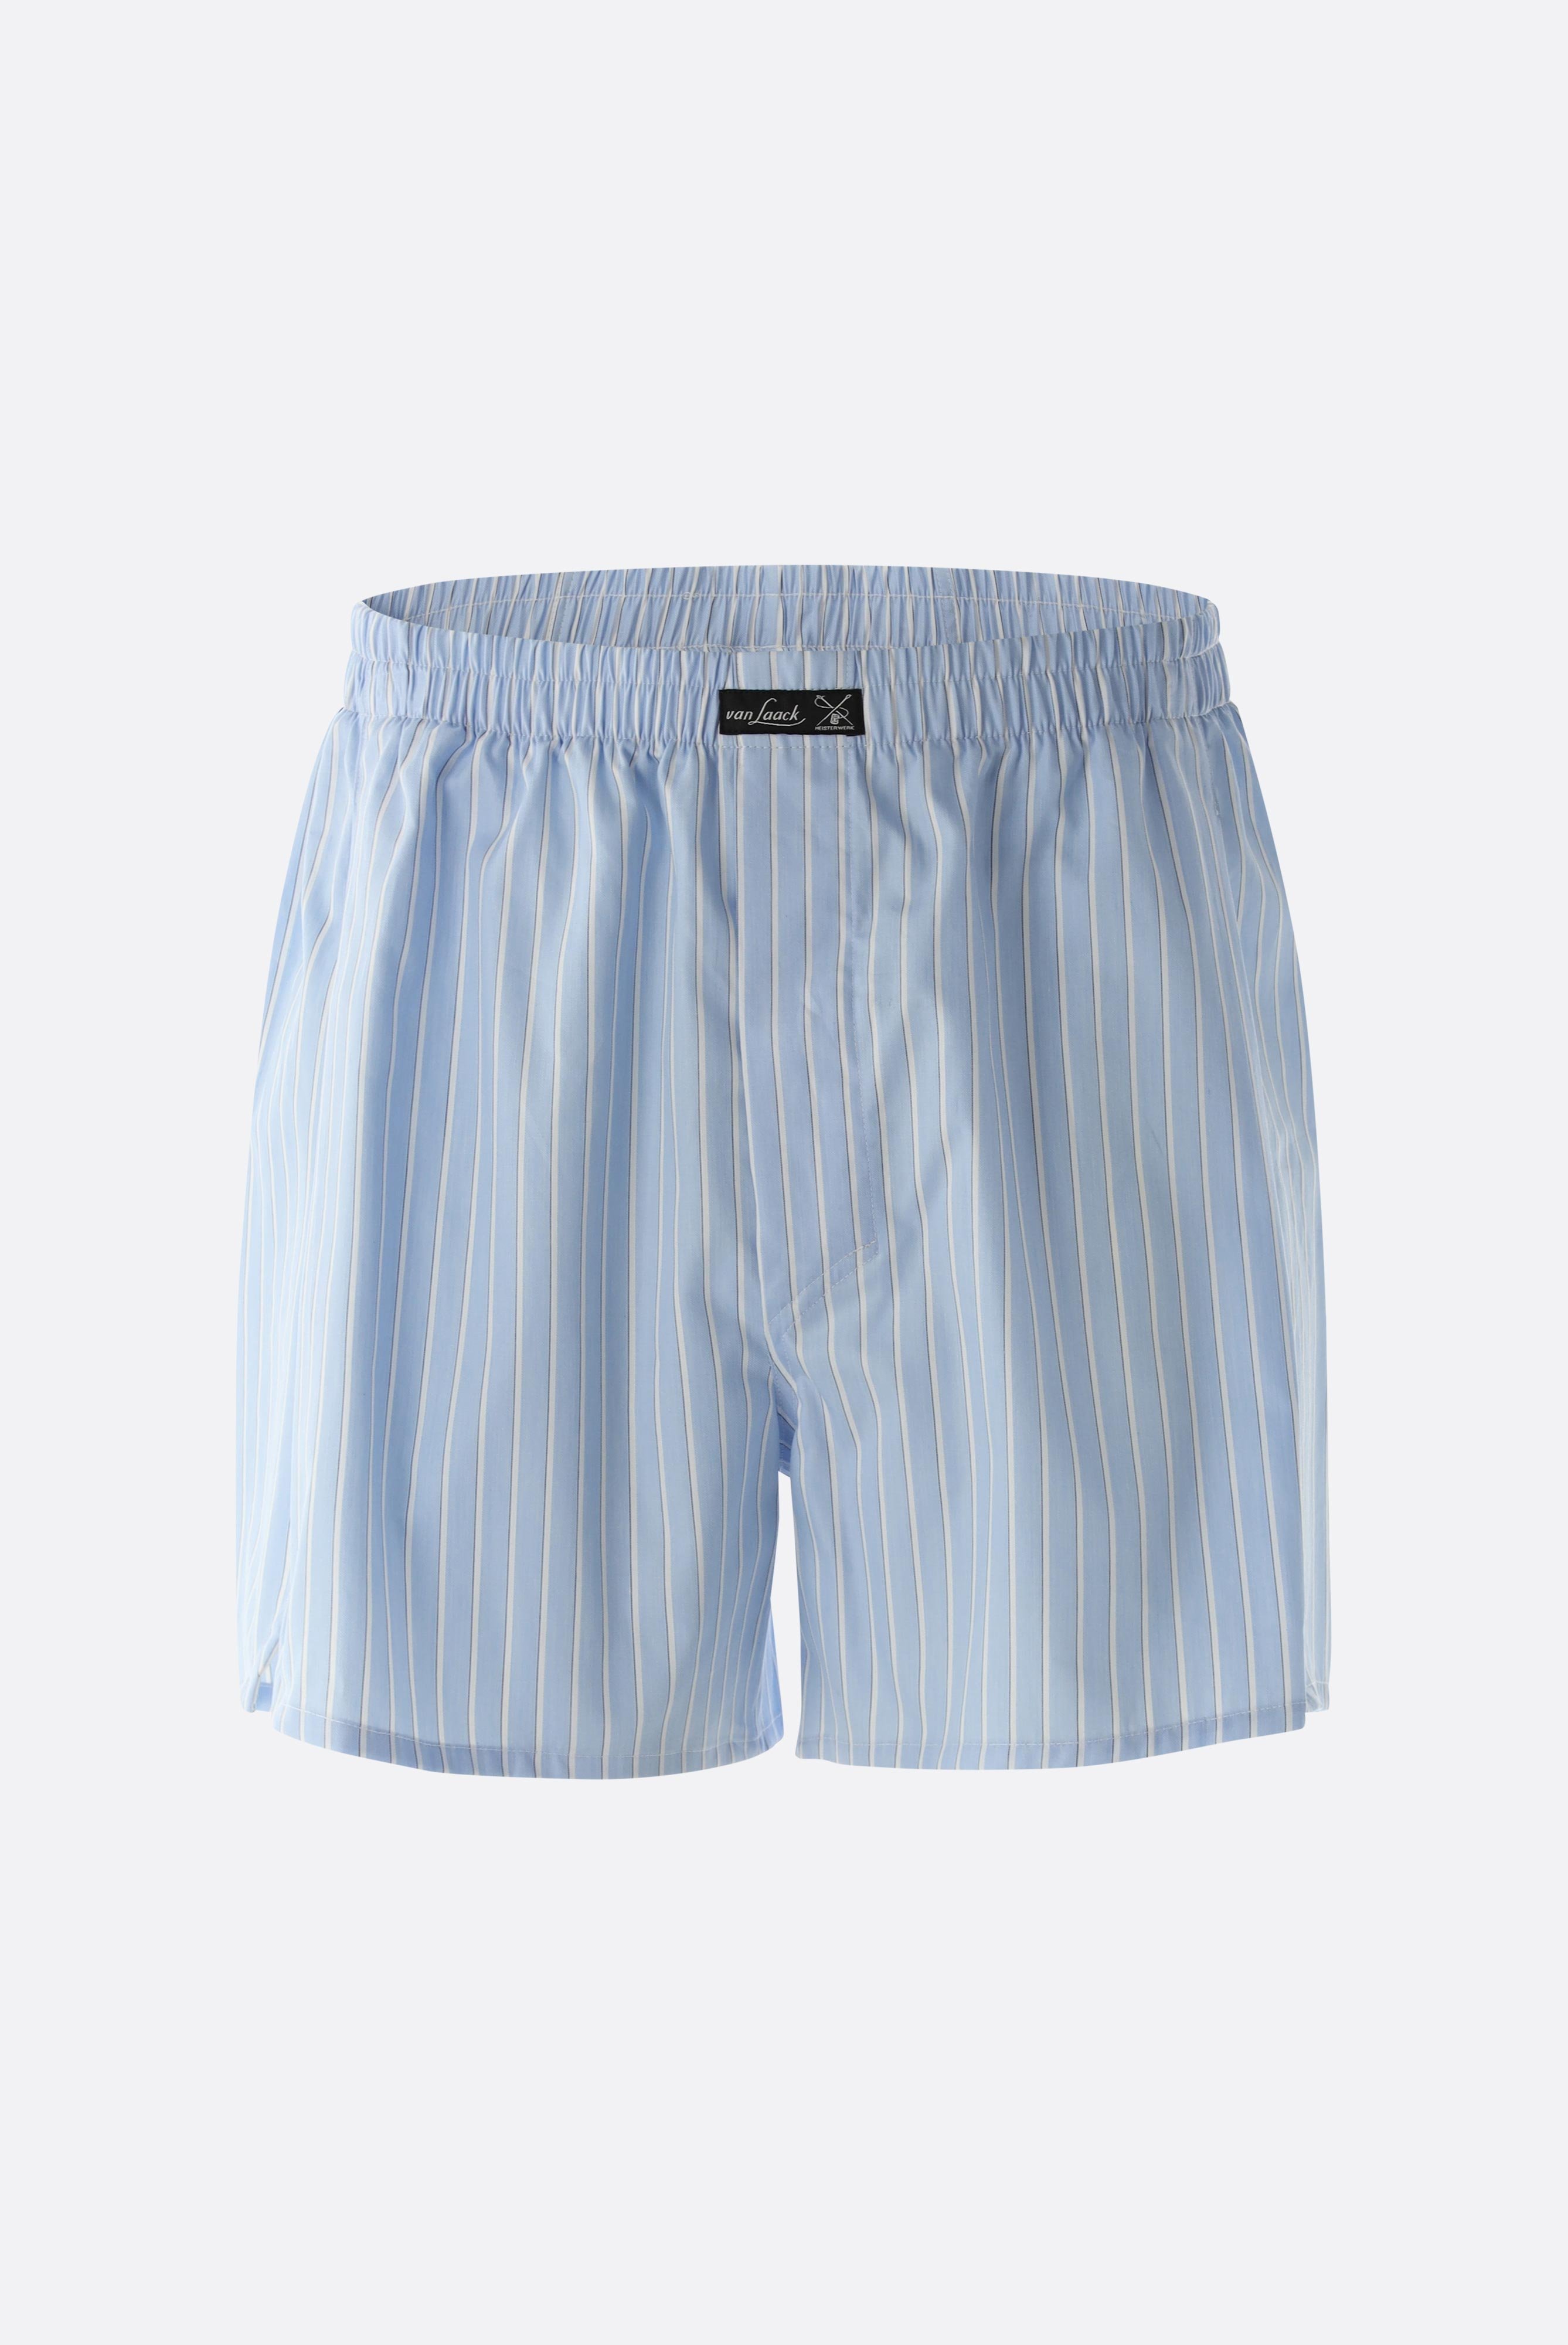 Underwear+Striped Twill Boxershorts+91.1100..151341.737.46